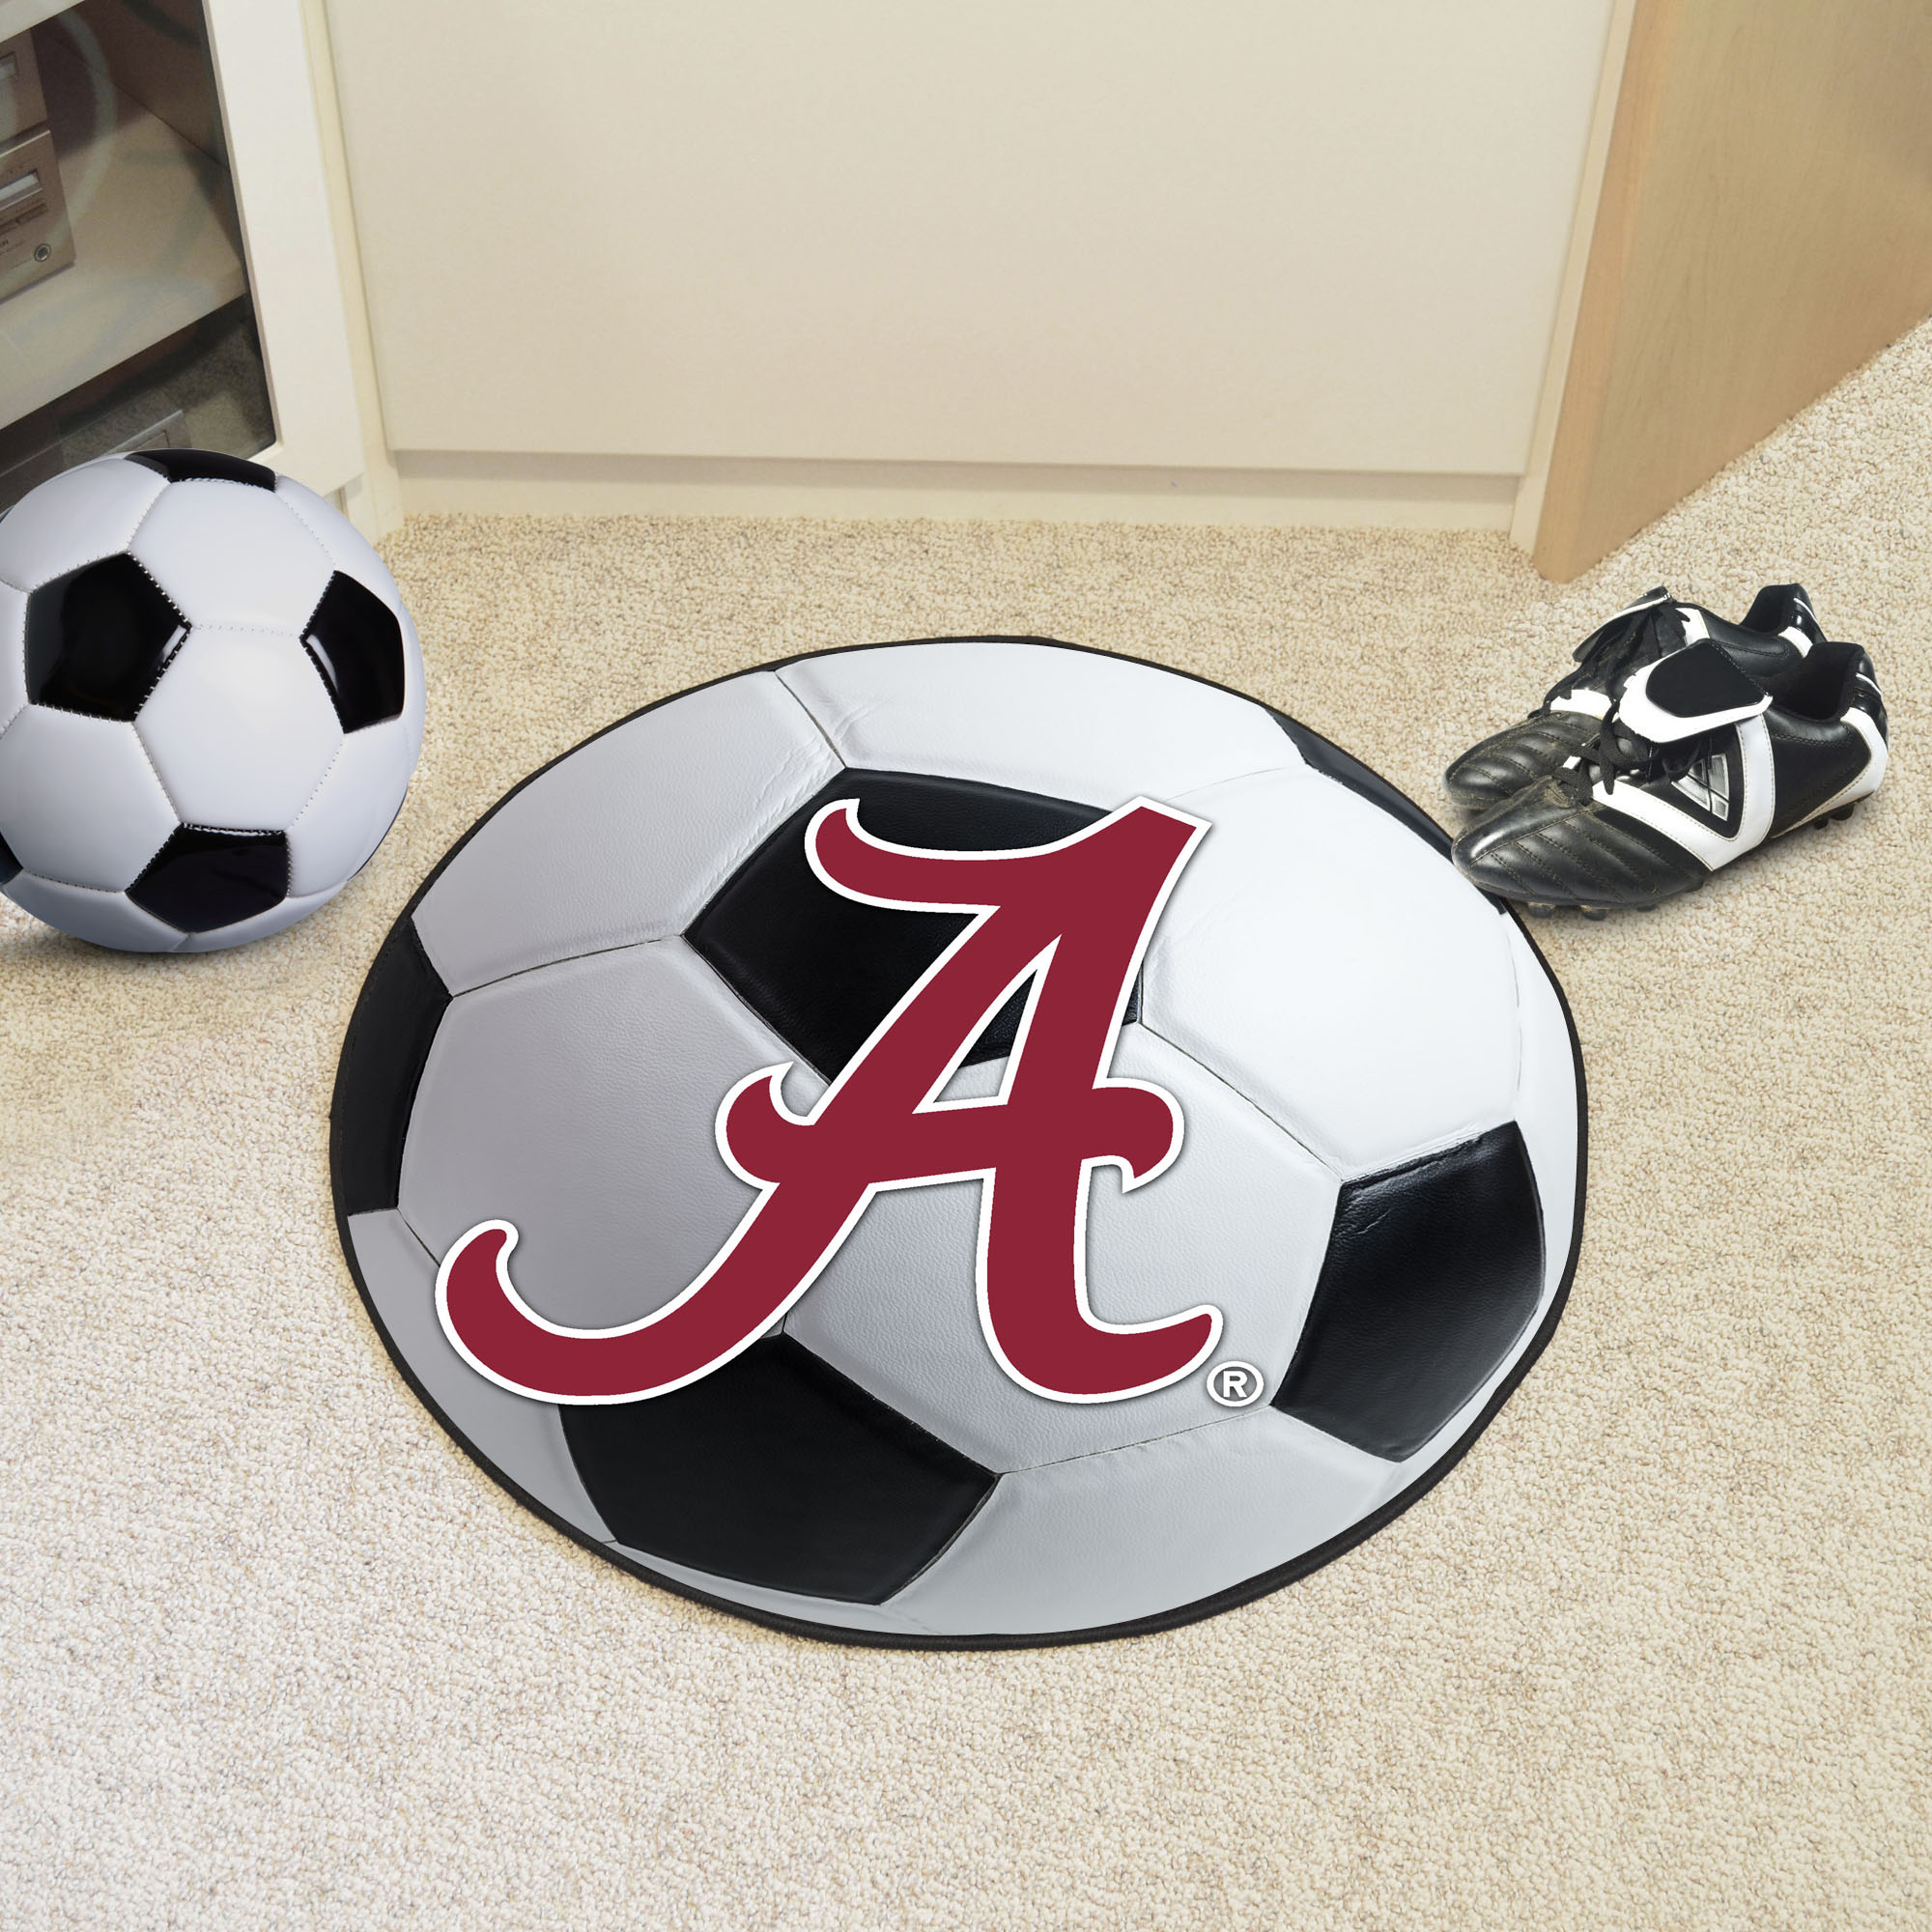 University of Alabama Logo Ball Shaped Area Rugs (Ball Shaped Area Rugs: Soccer Ball)